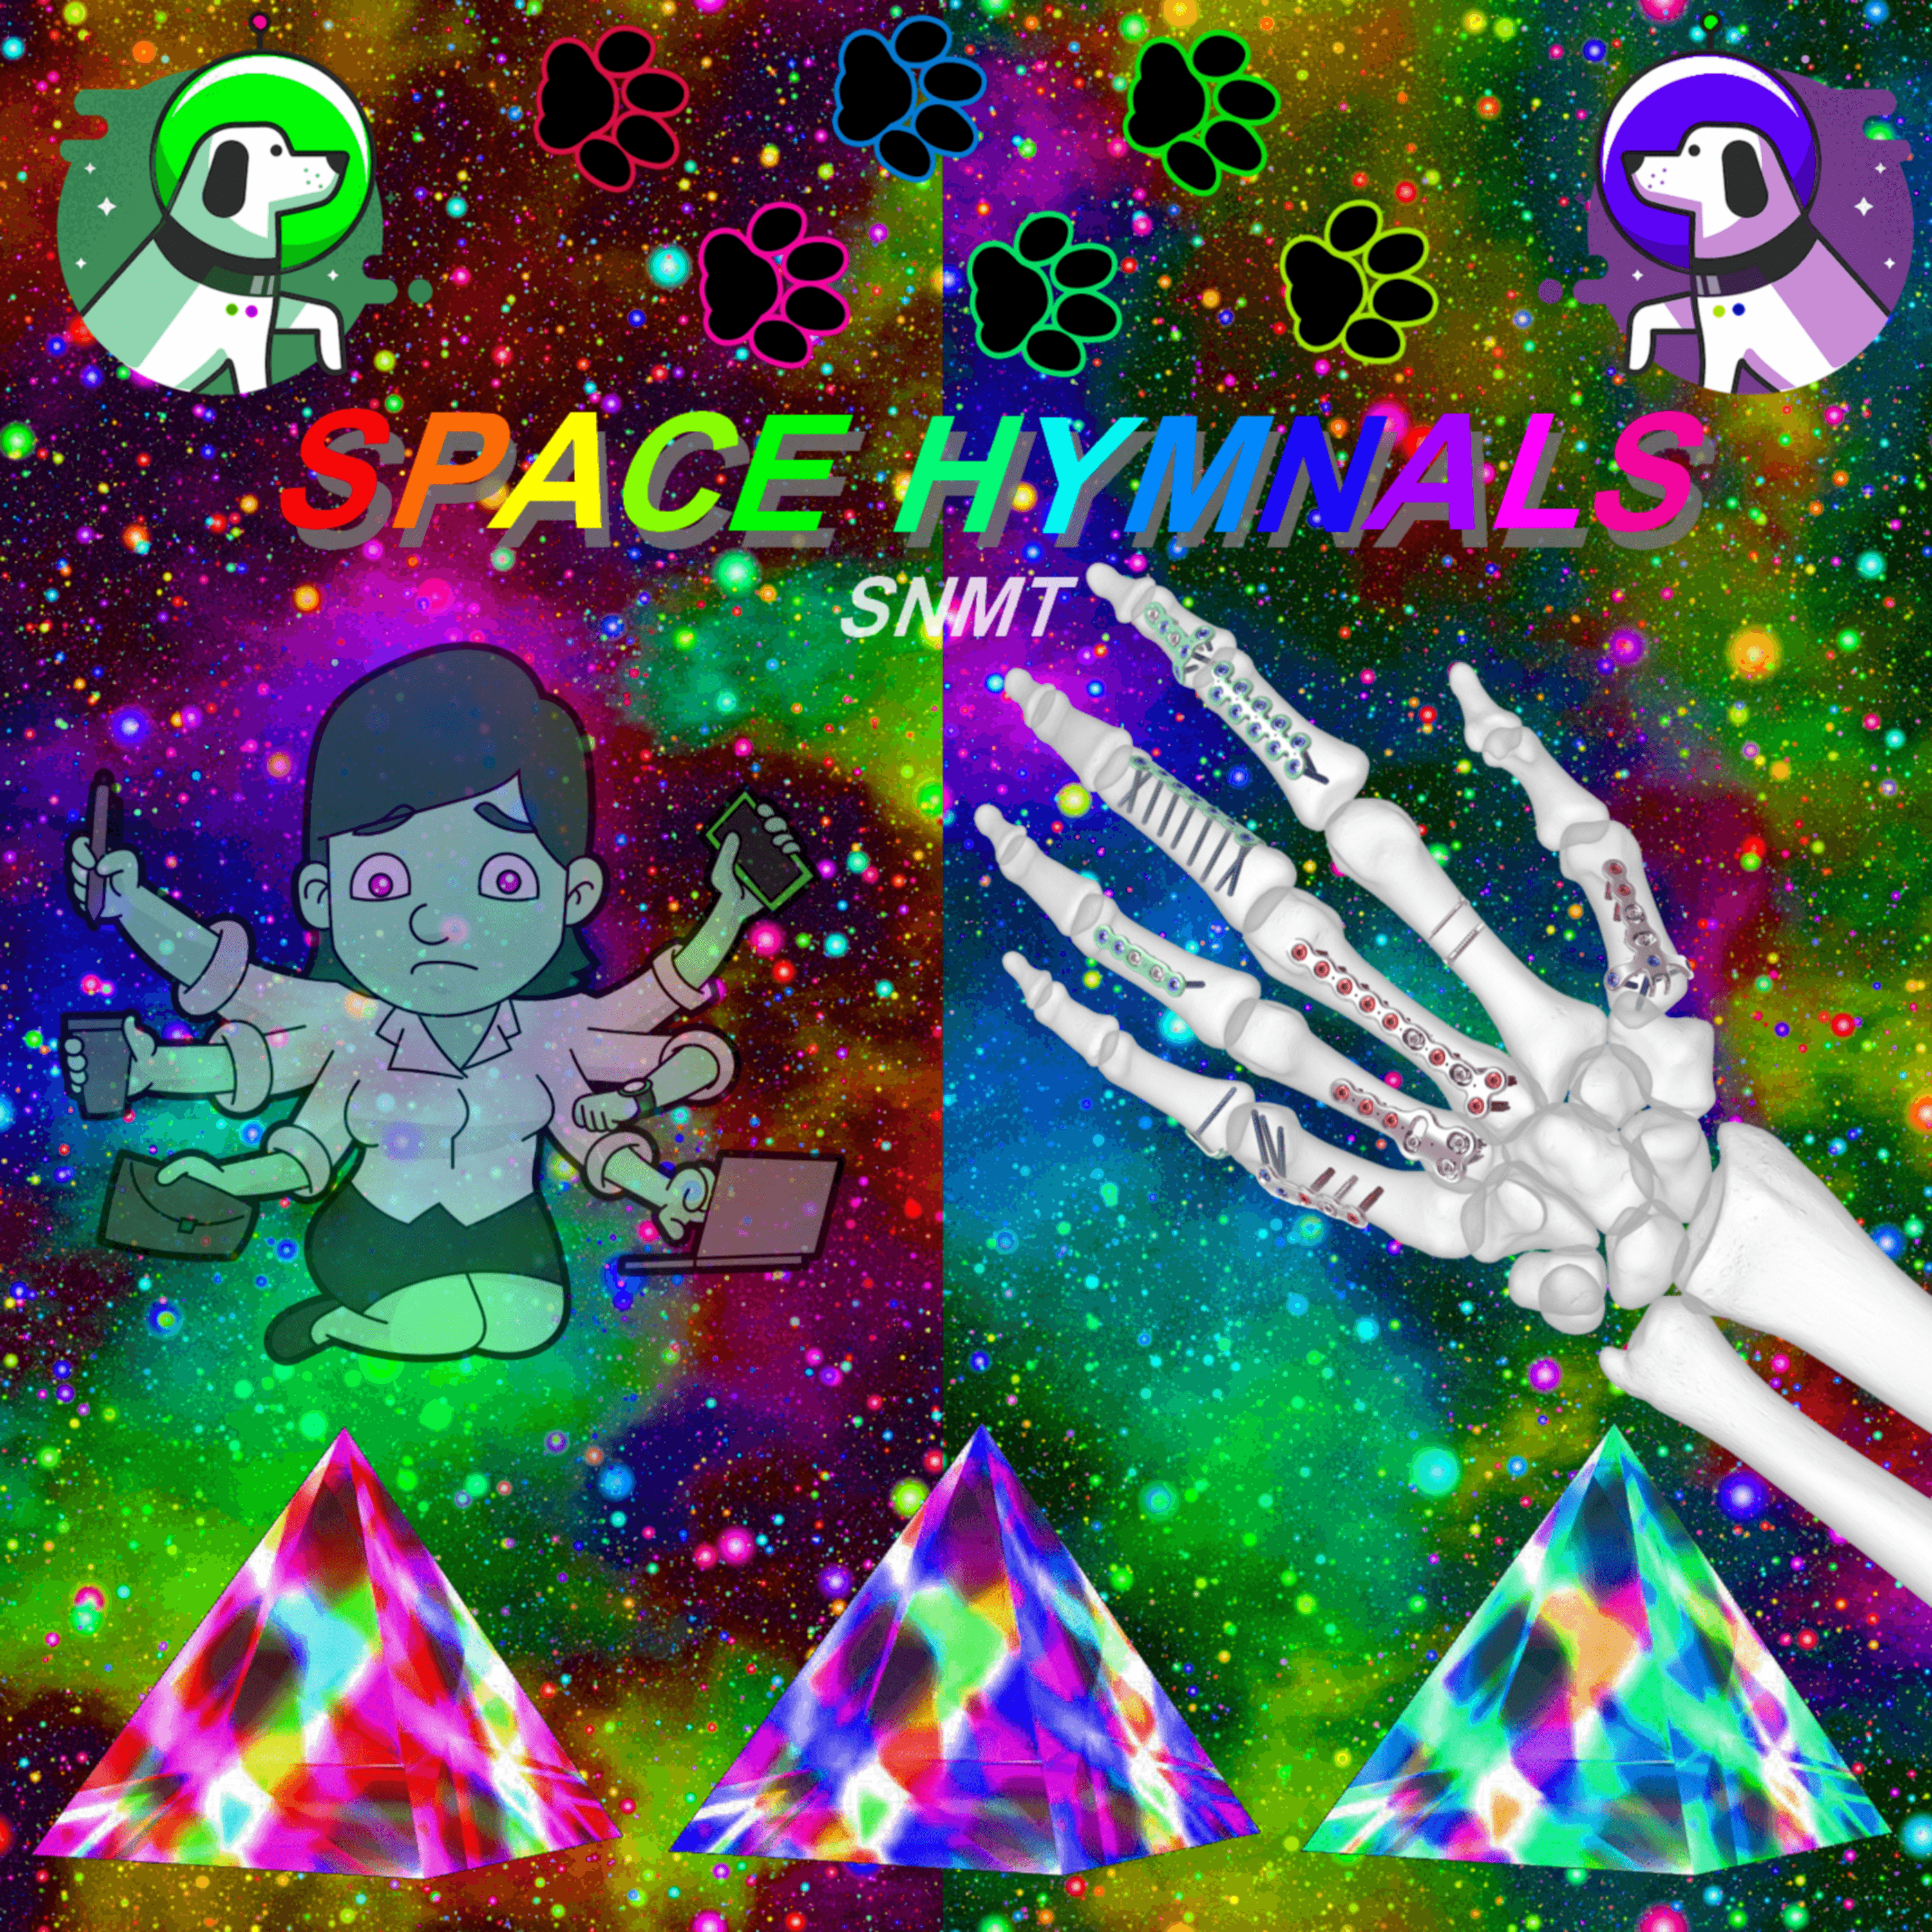 SNMT - Space Hymnals (album)